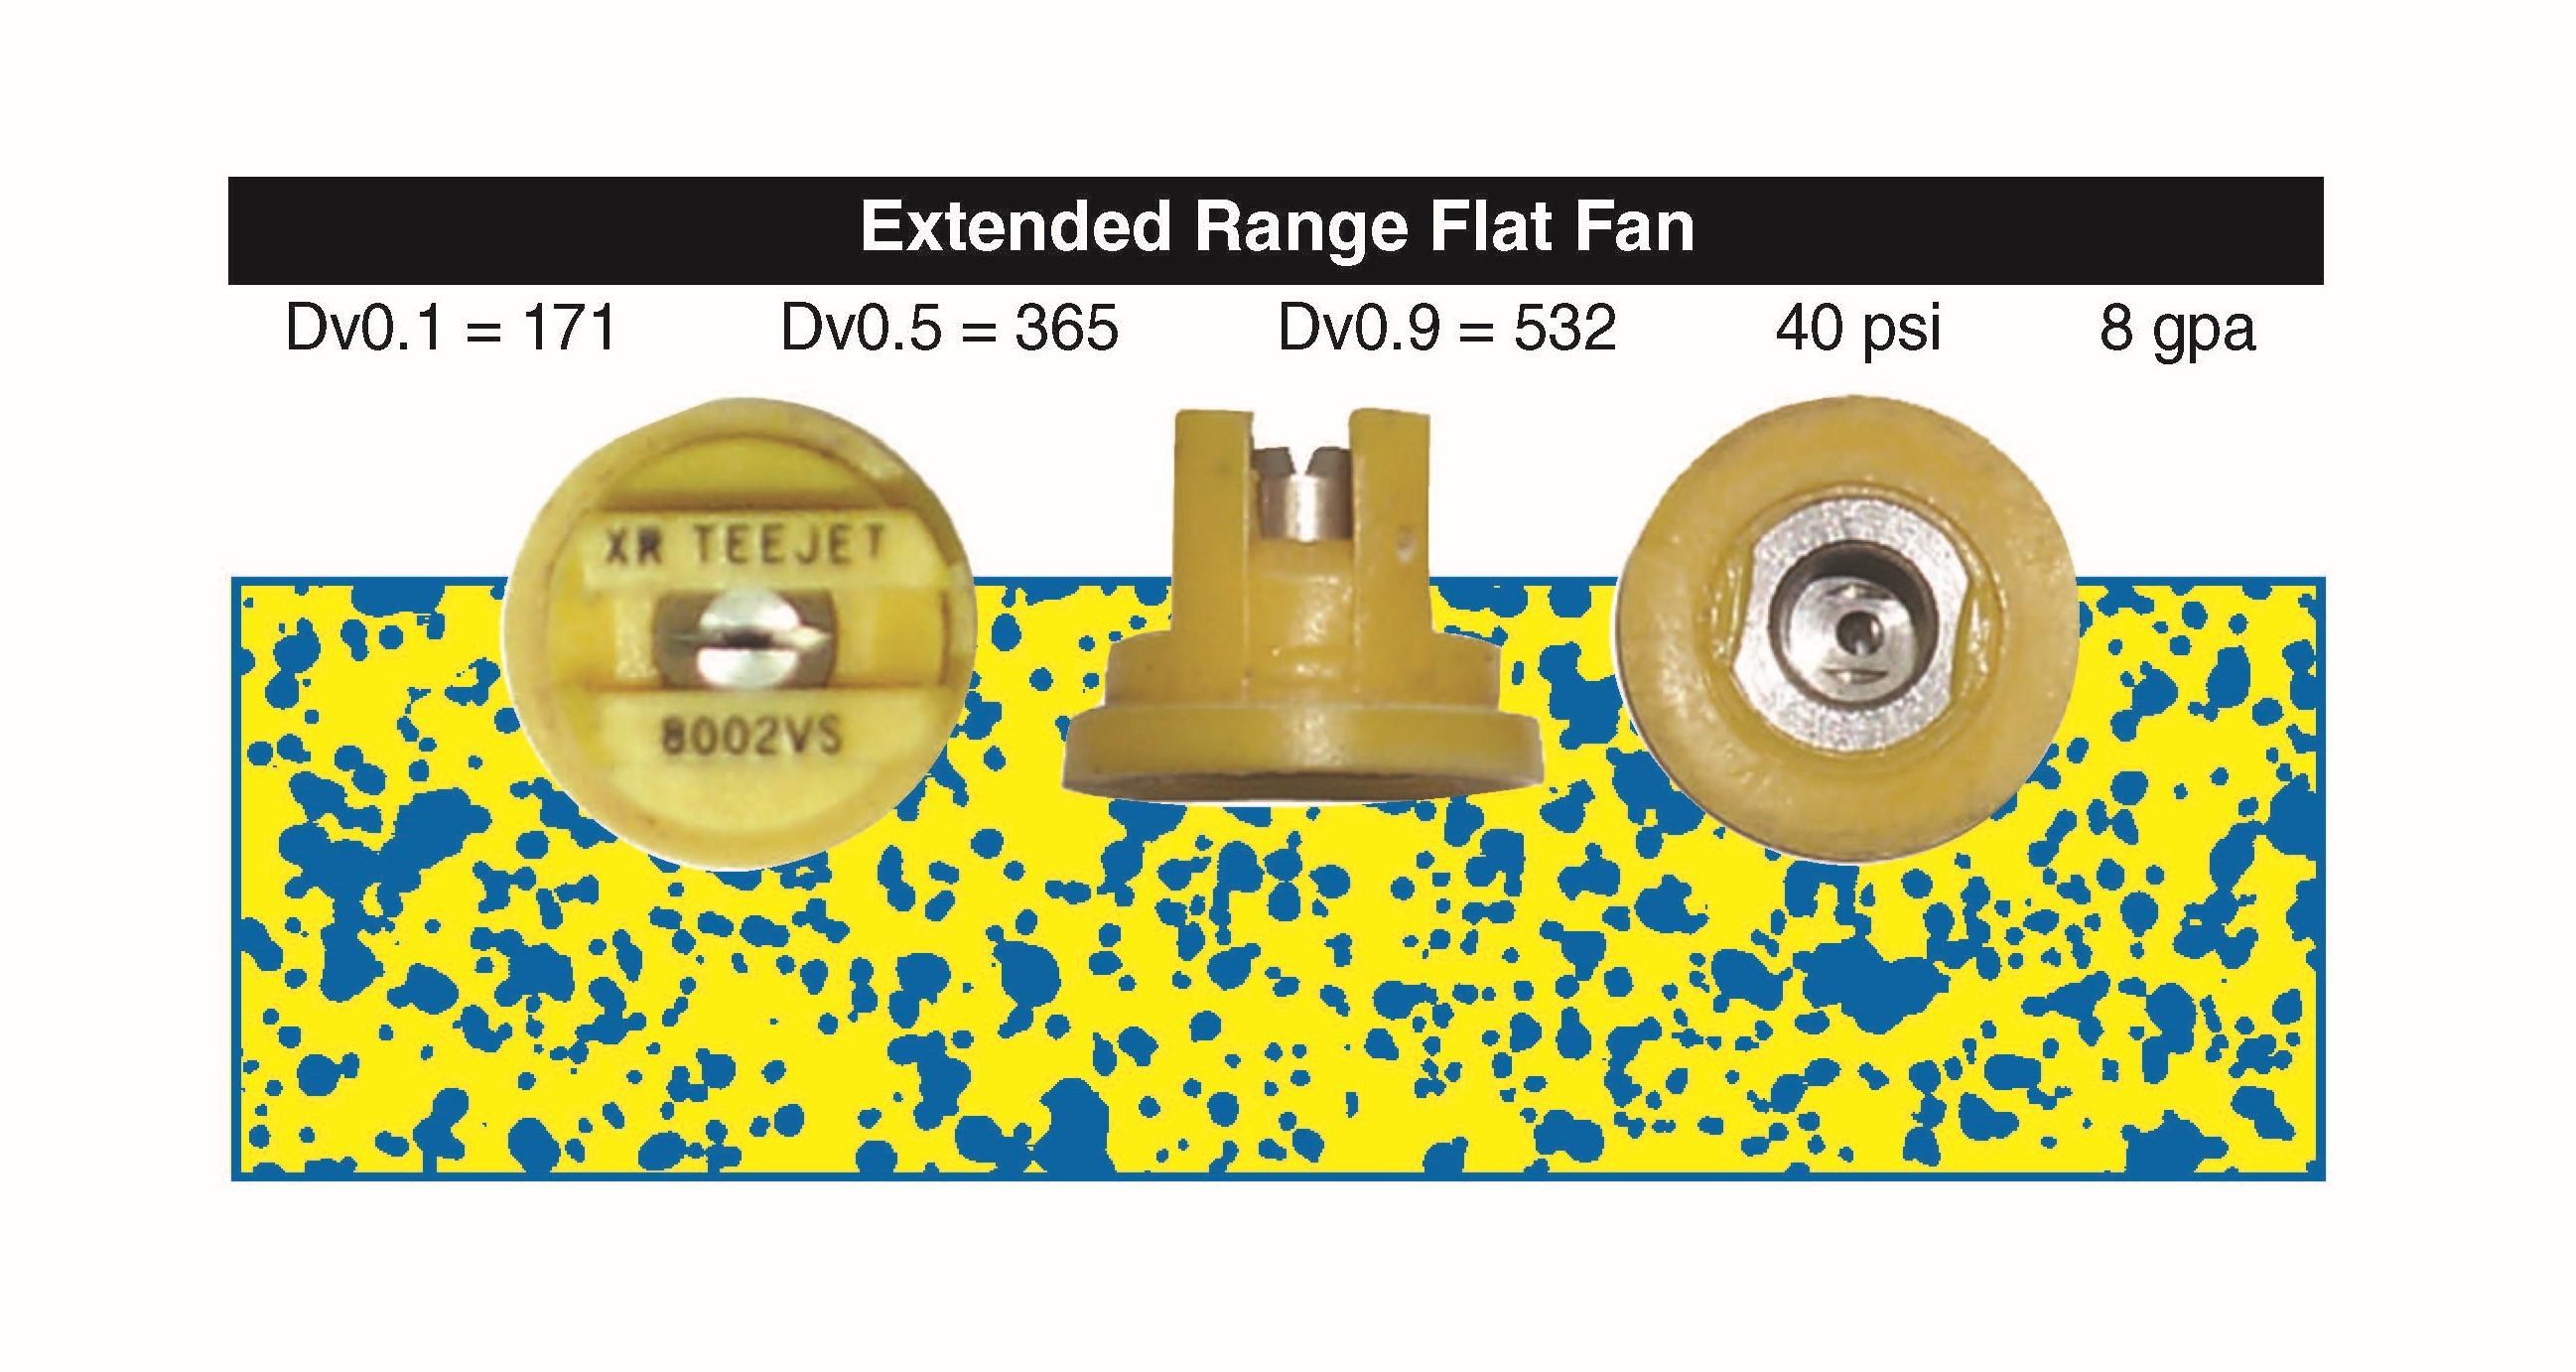 Extended range flat fan nozzle